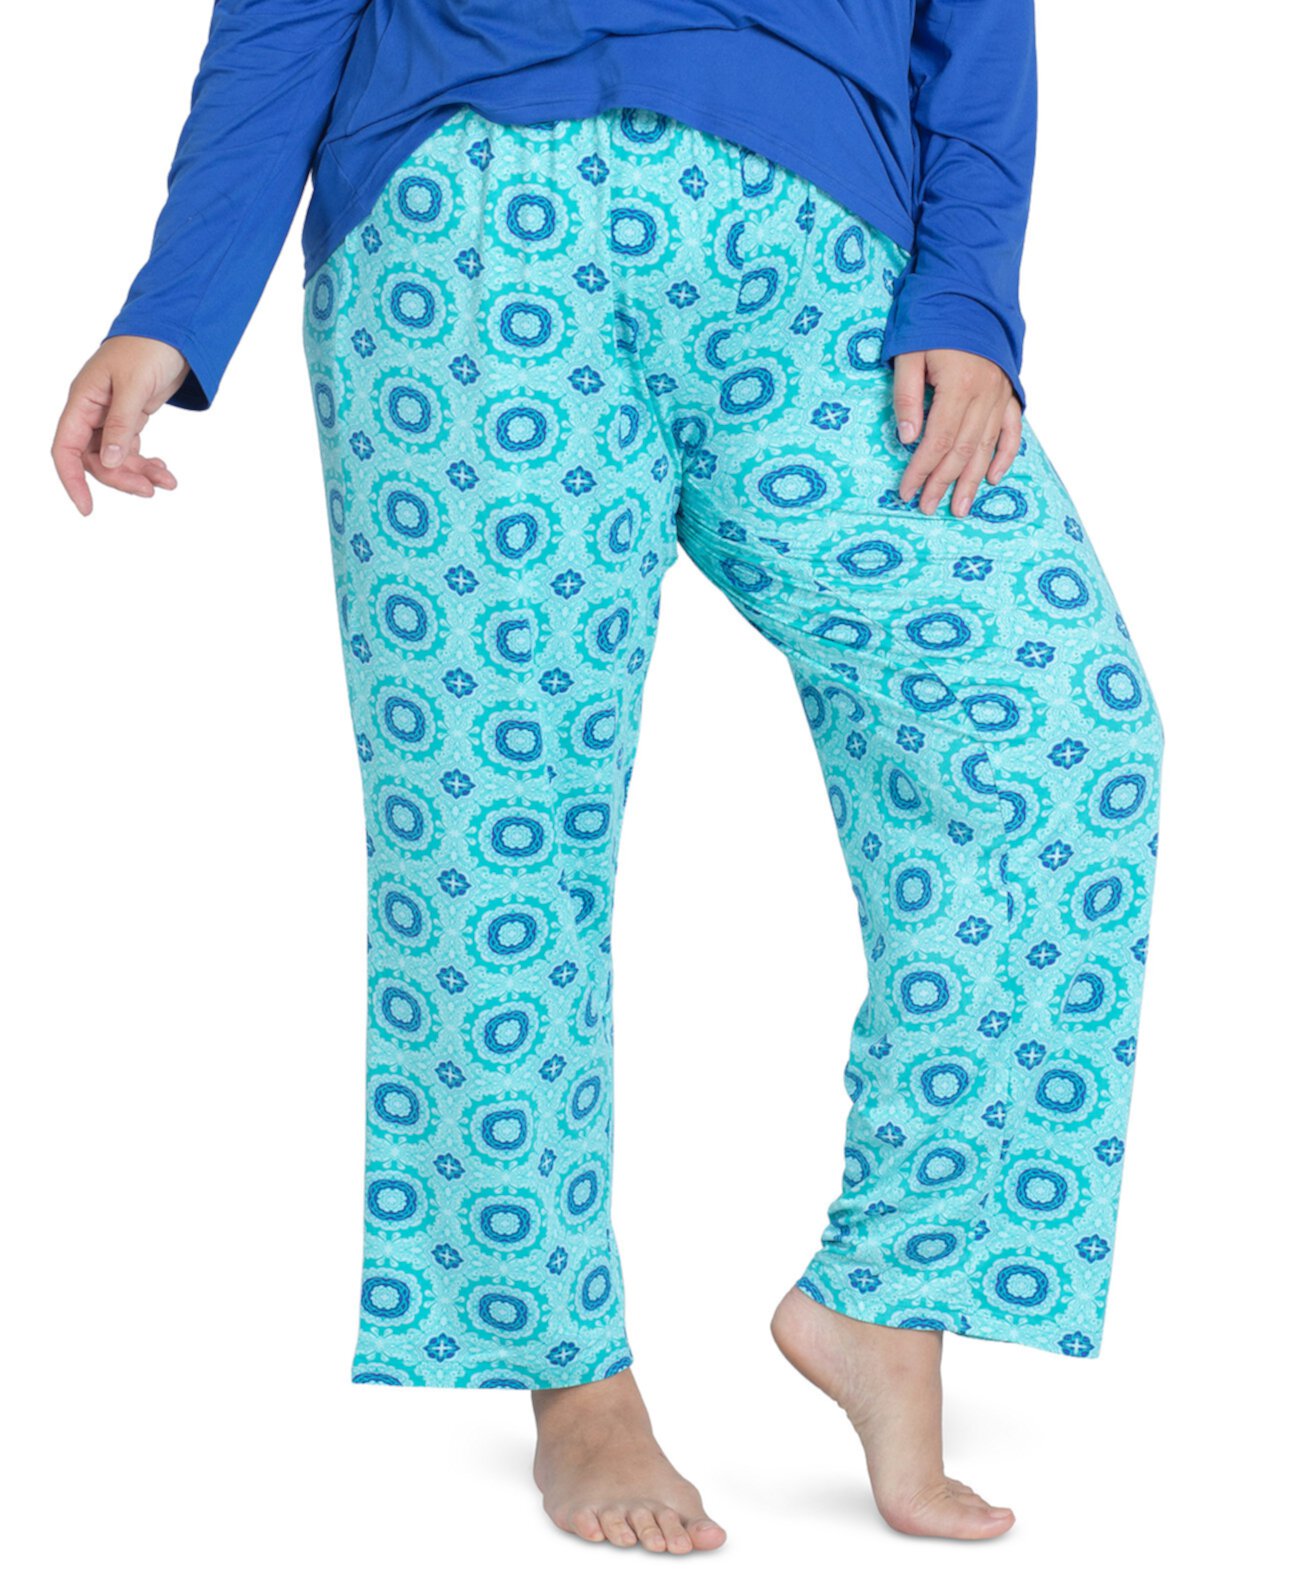 Plus Size Cool Girl Printed Pajama Pants MUK LUKS